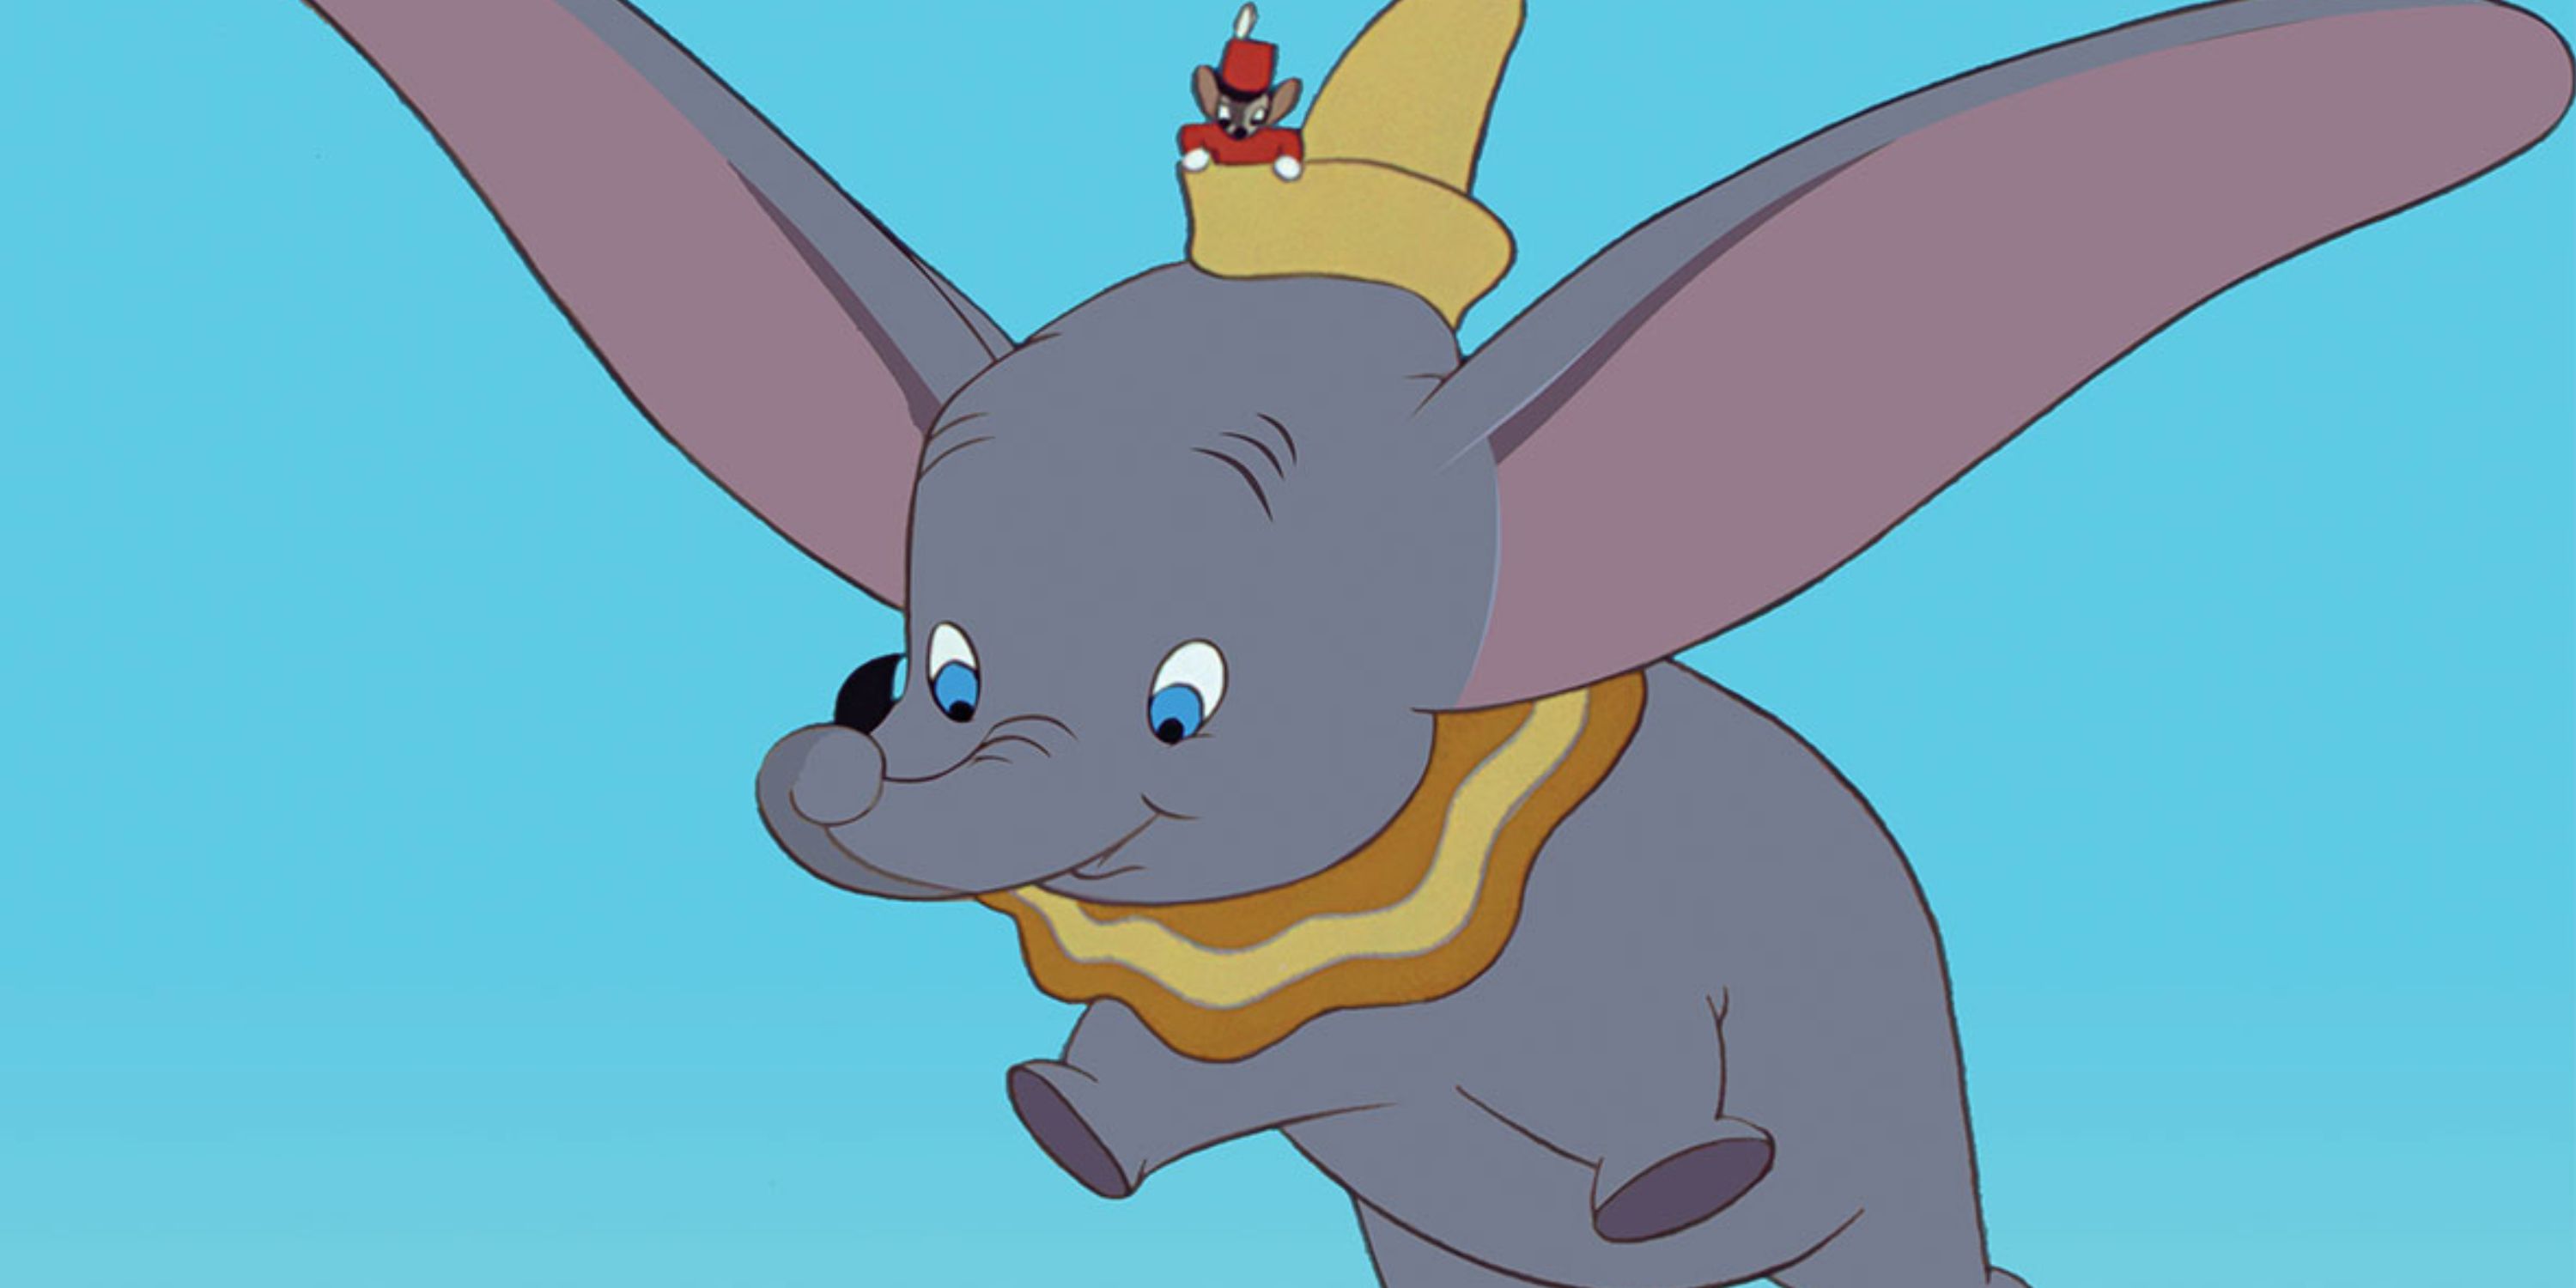 animated baby elephant flying with giant ears